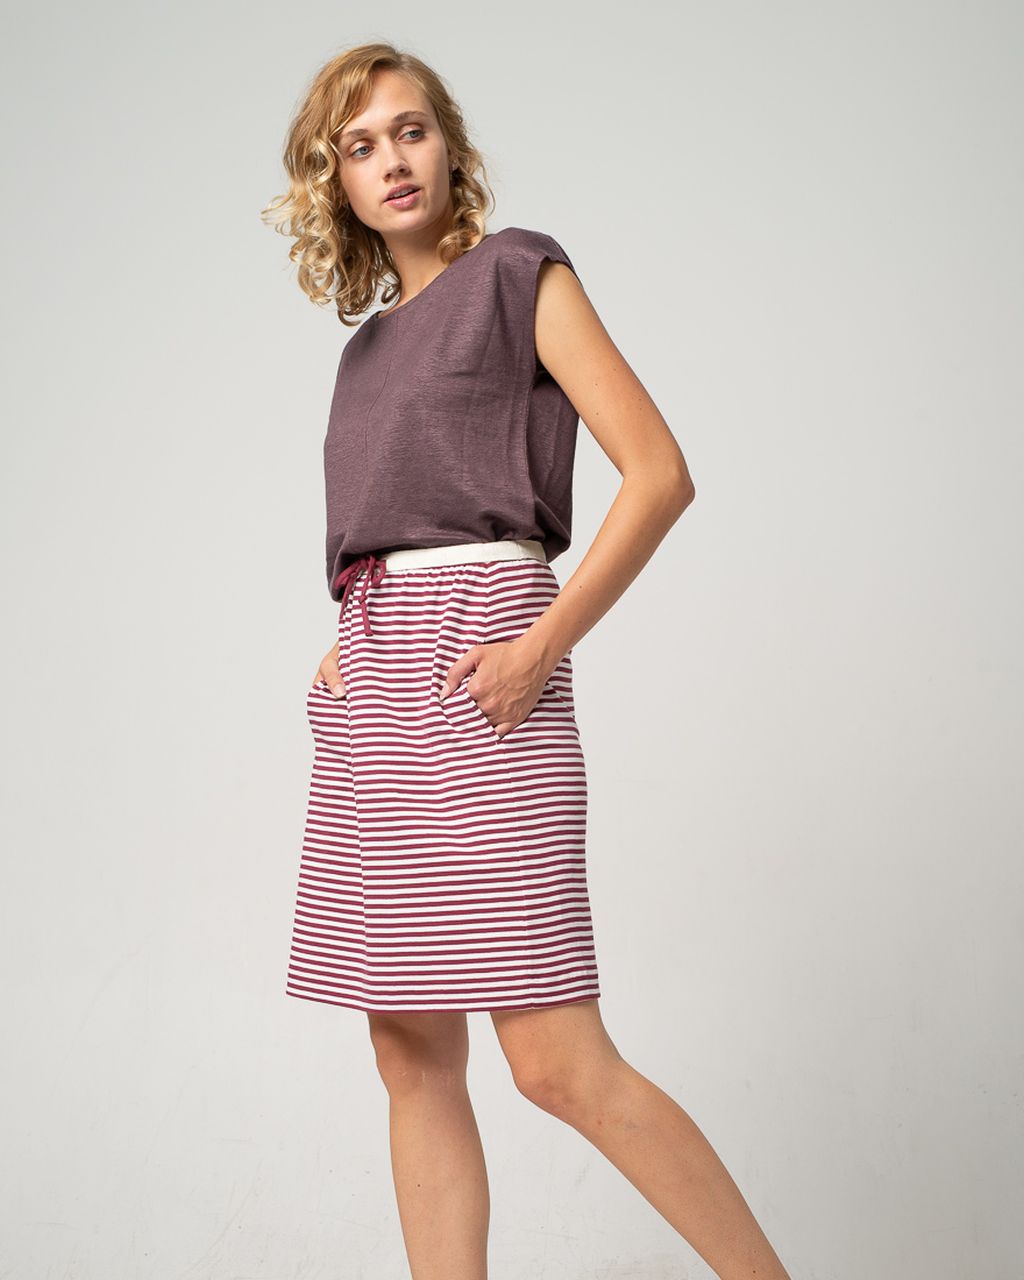 Breton Skirt Berry S